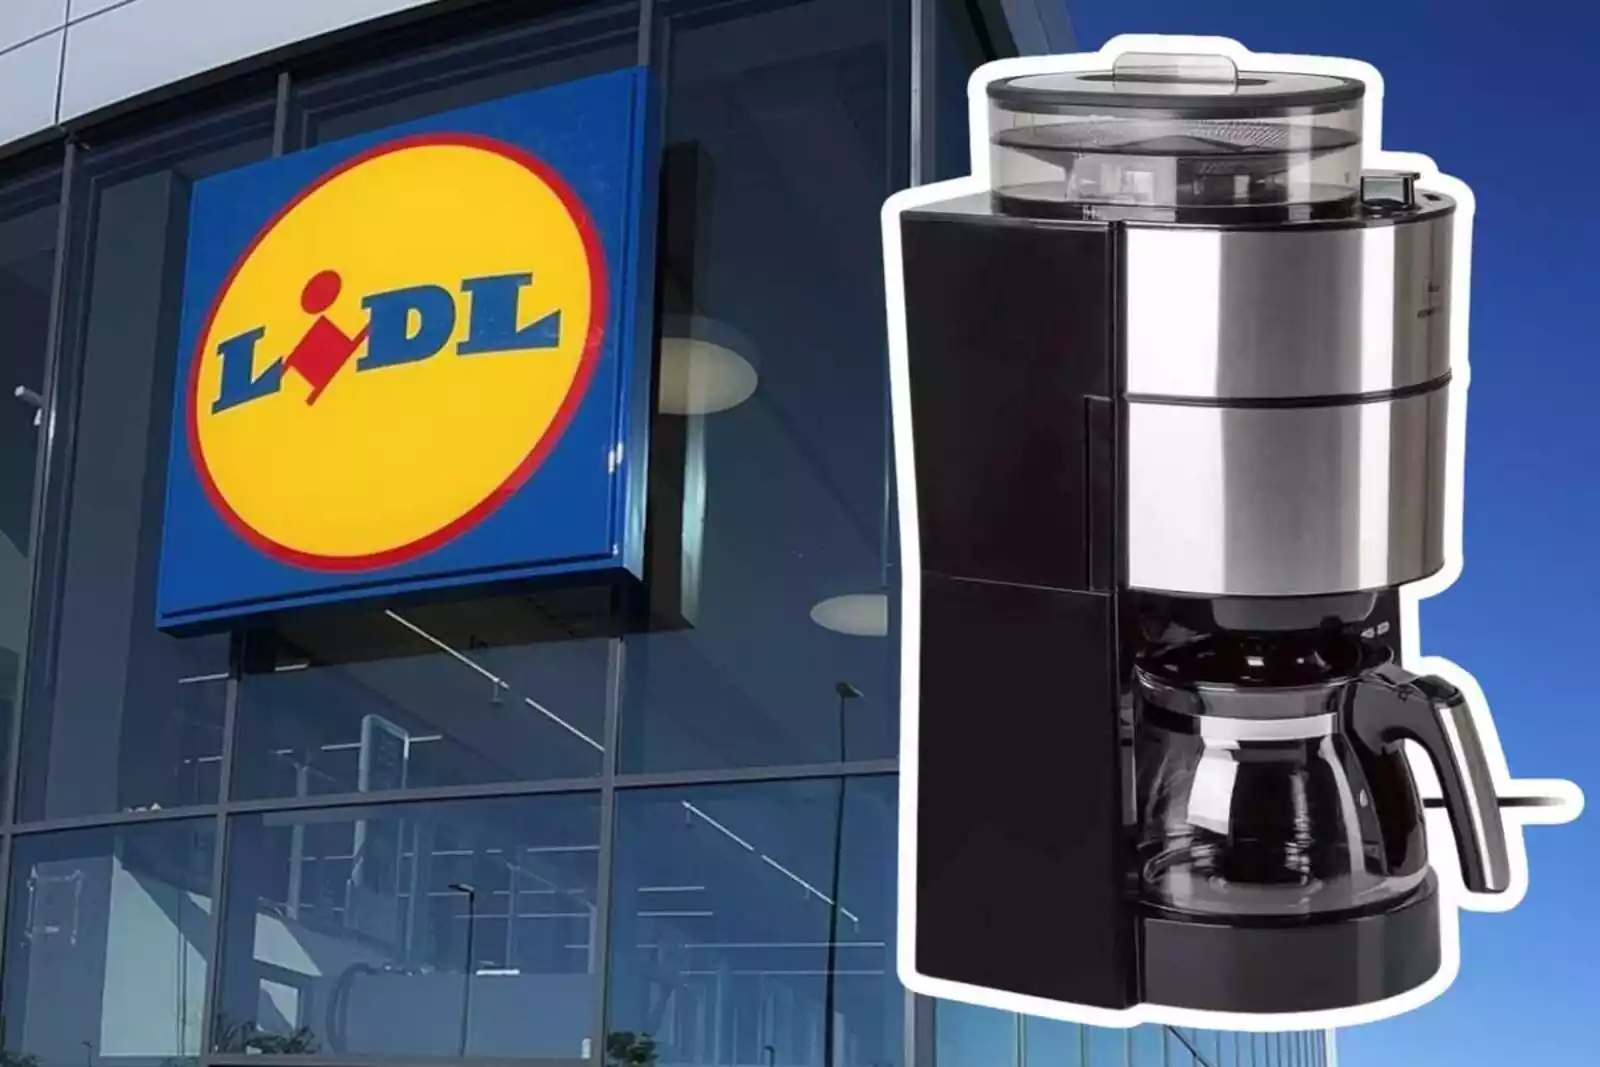 Ofertón en !: Esta cafetera automática ahora está rebajada 130 euros  - Telecinco